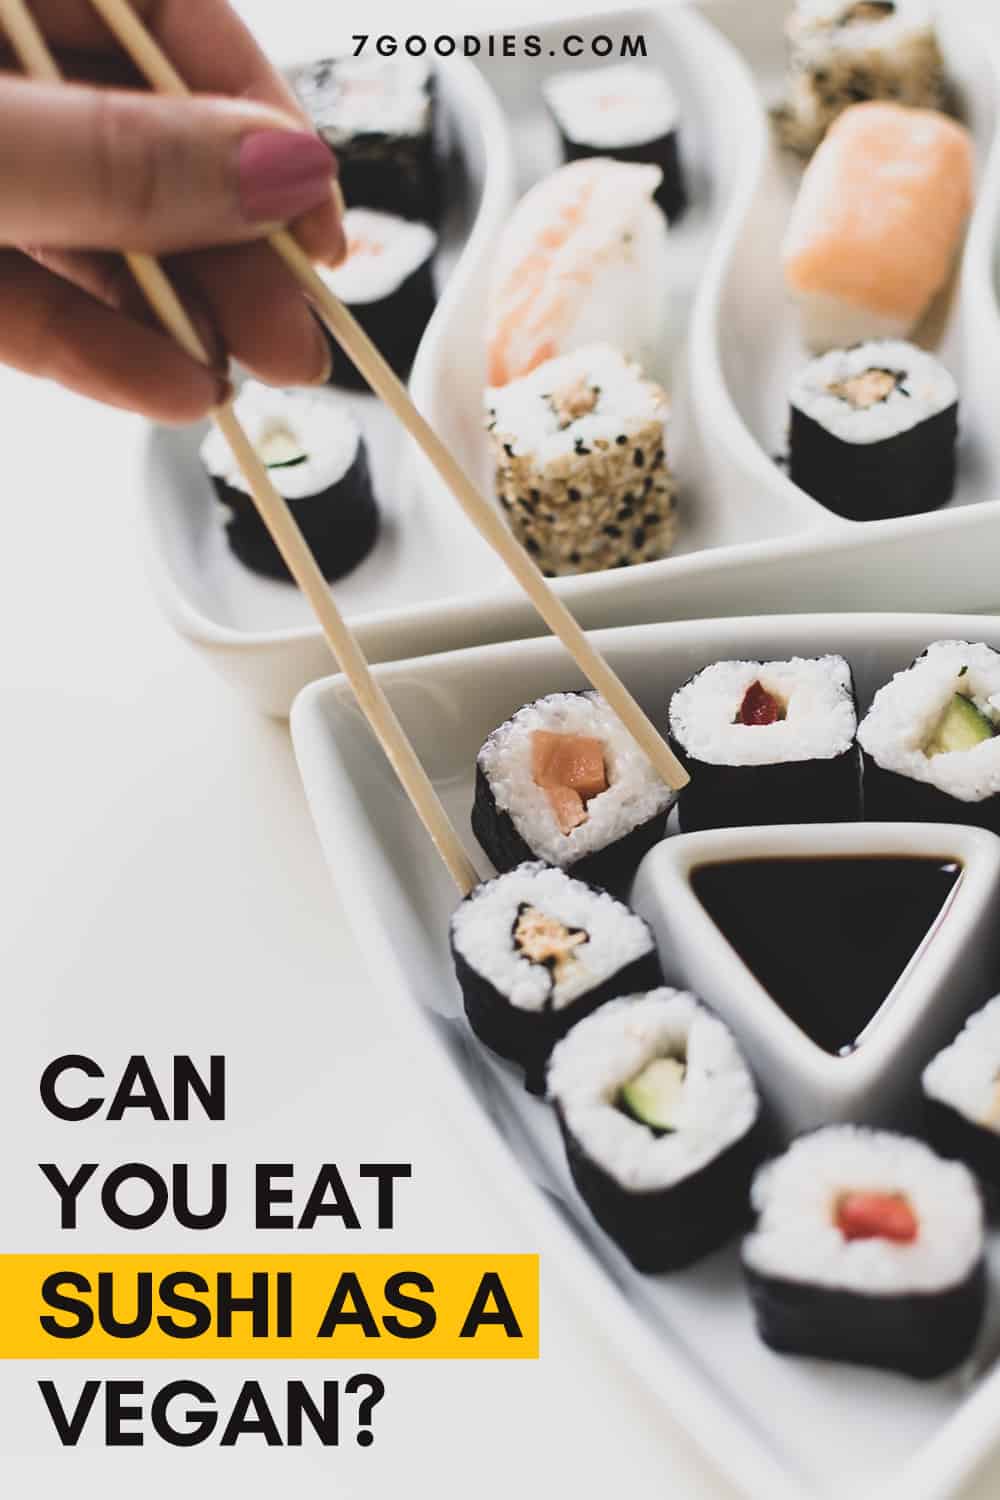 can you eat sushi as a vegan?